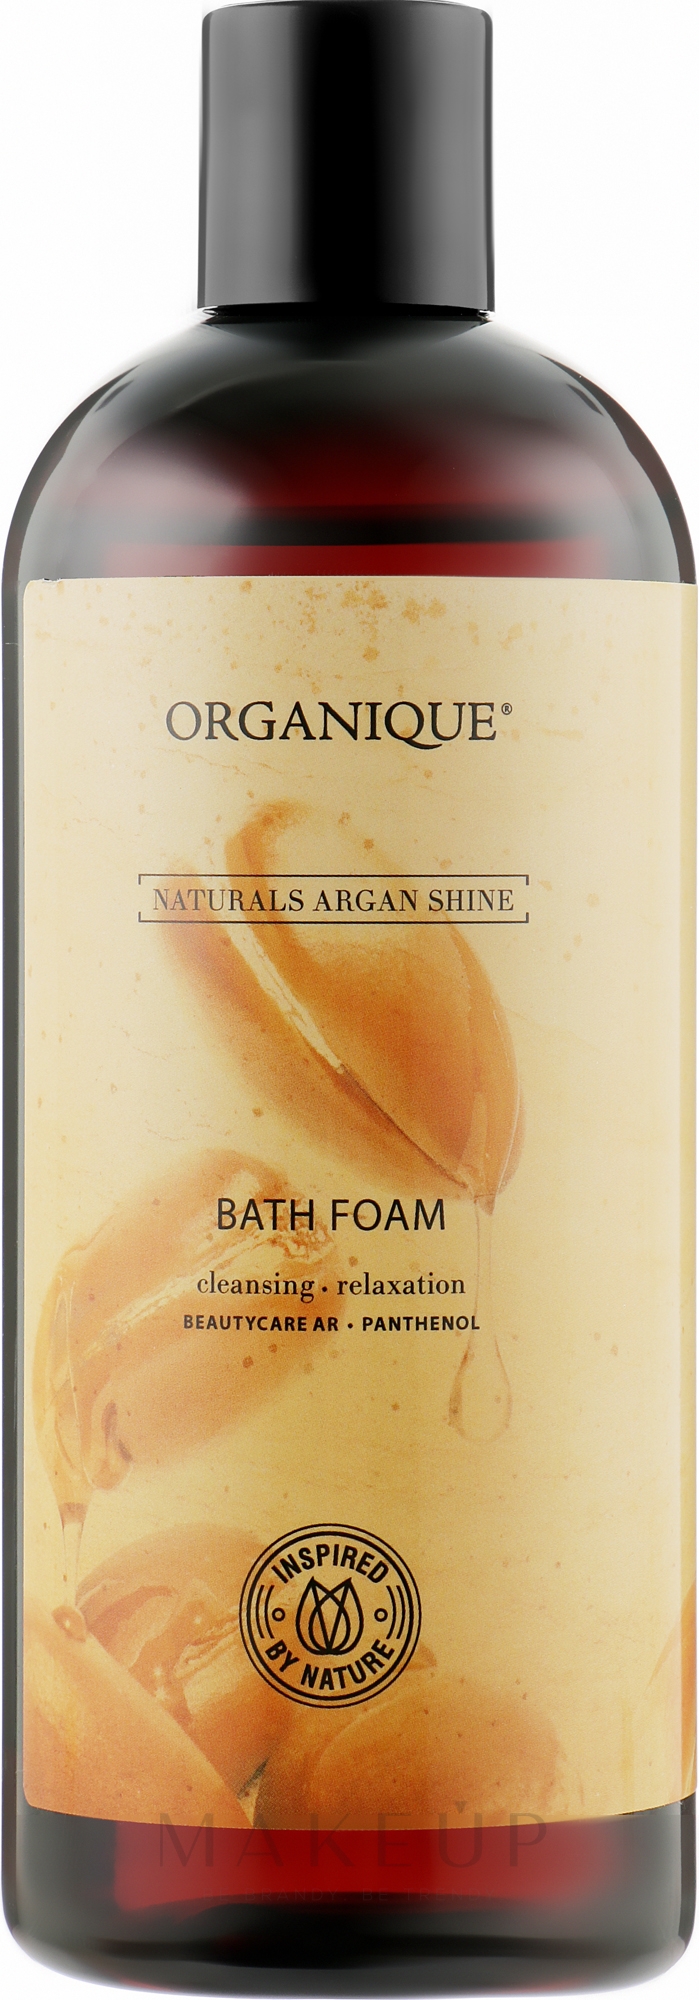 Badeschaum für trockene und empfindliche Haut - Organique Naturals Argan Shine Bath Foam — Bild 400 ml